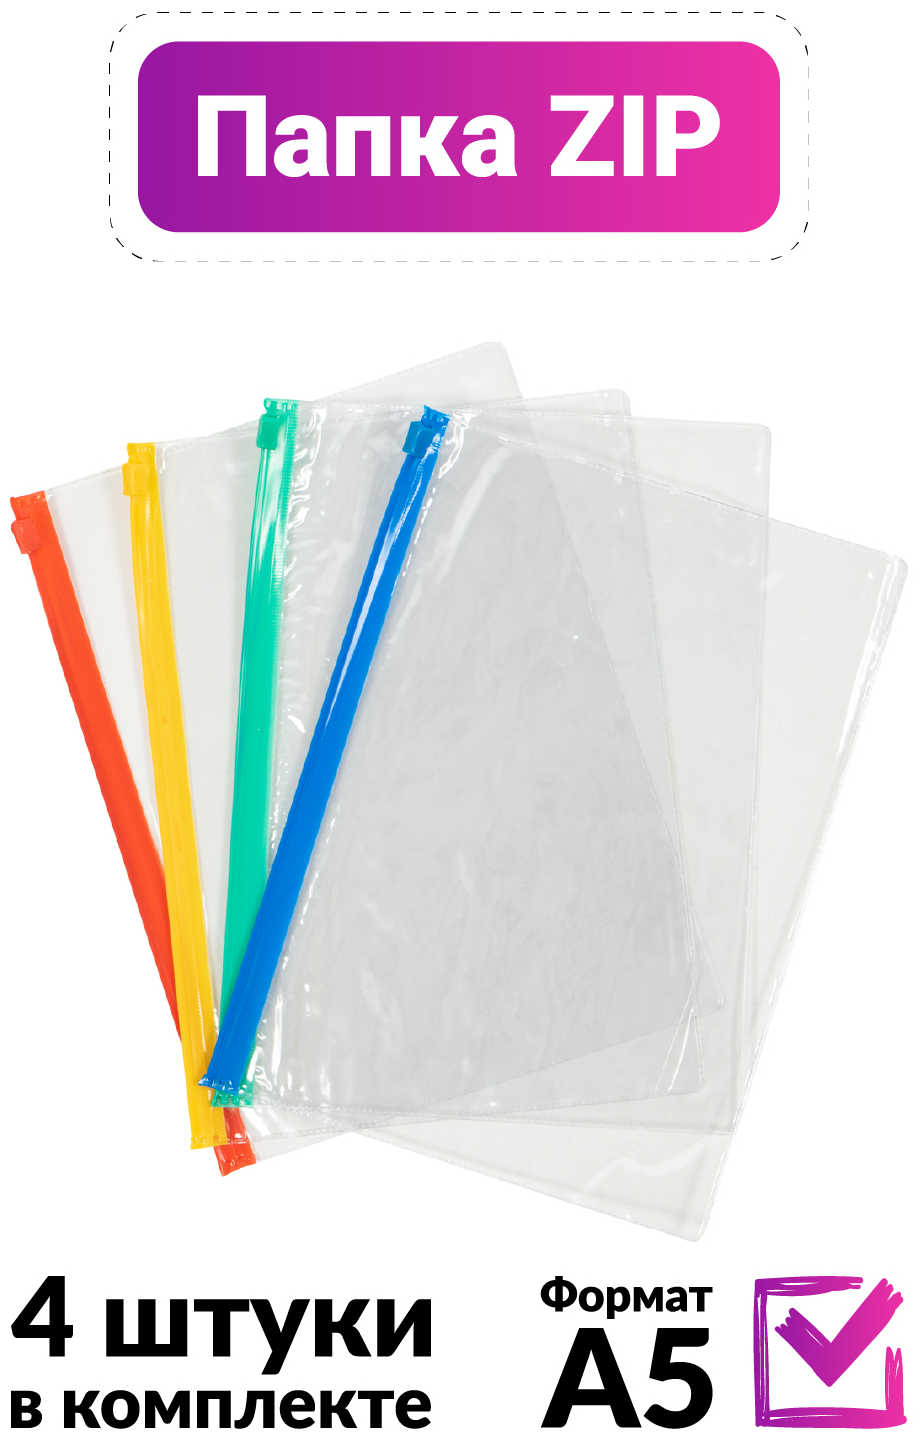 Папка конверт на цветной зип молнии формата А5 пластиковая прозрачная красивая, набор 4 штуки